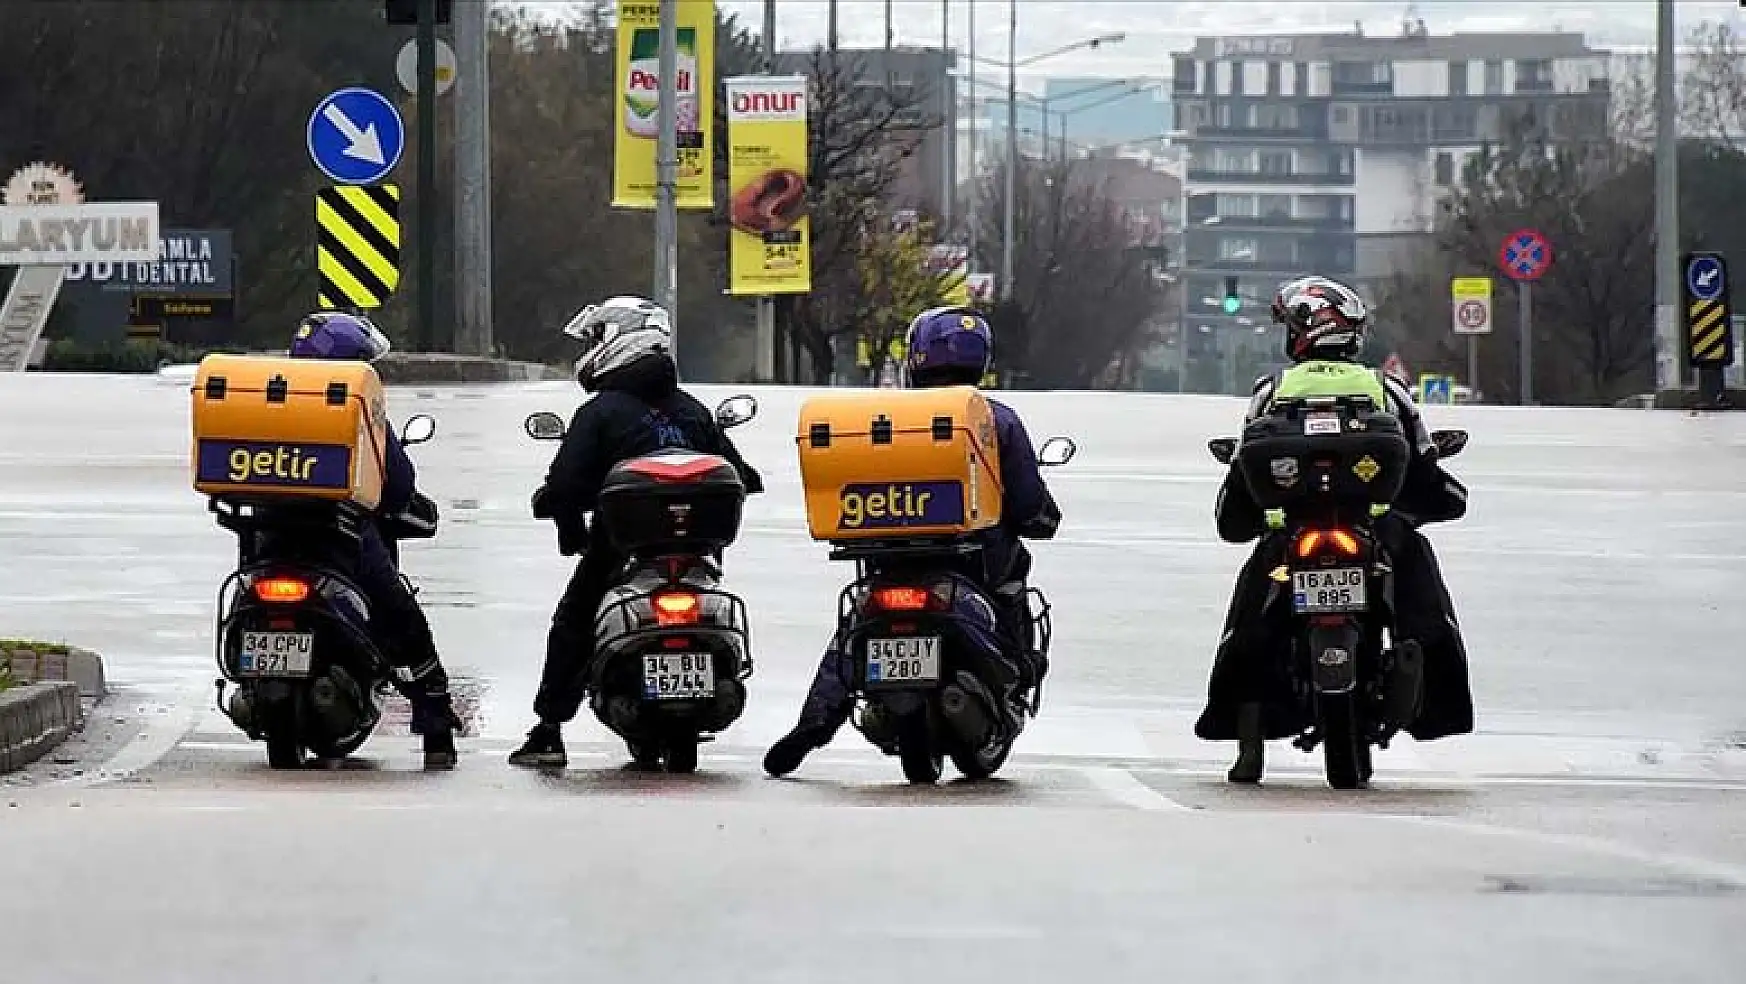 Türk-İş'ten motosikletli kuryelere tam destek